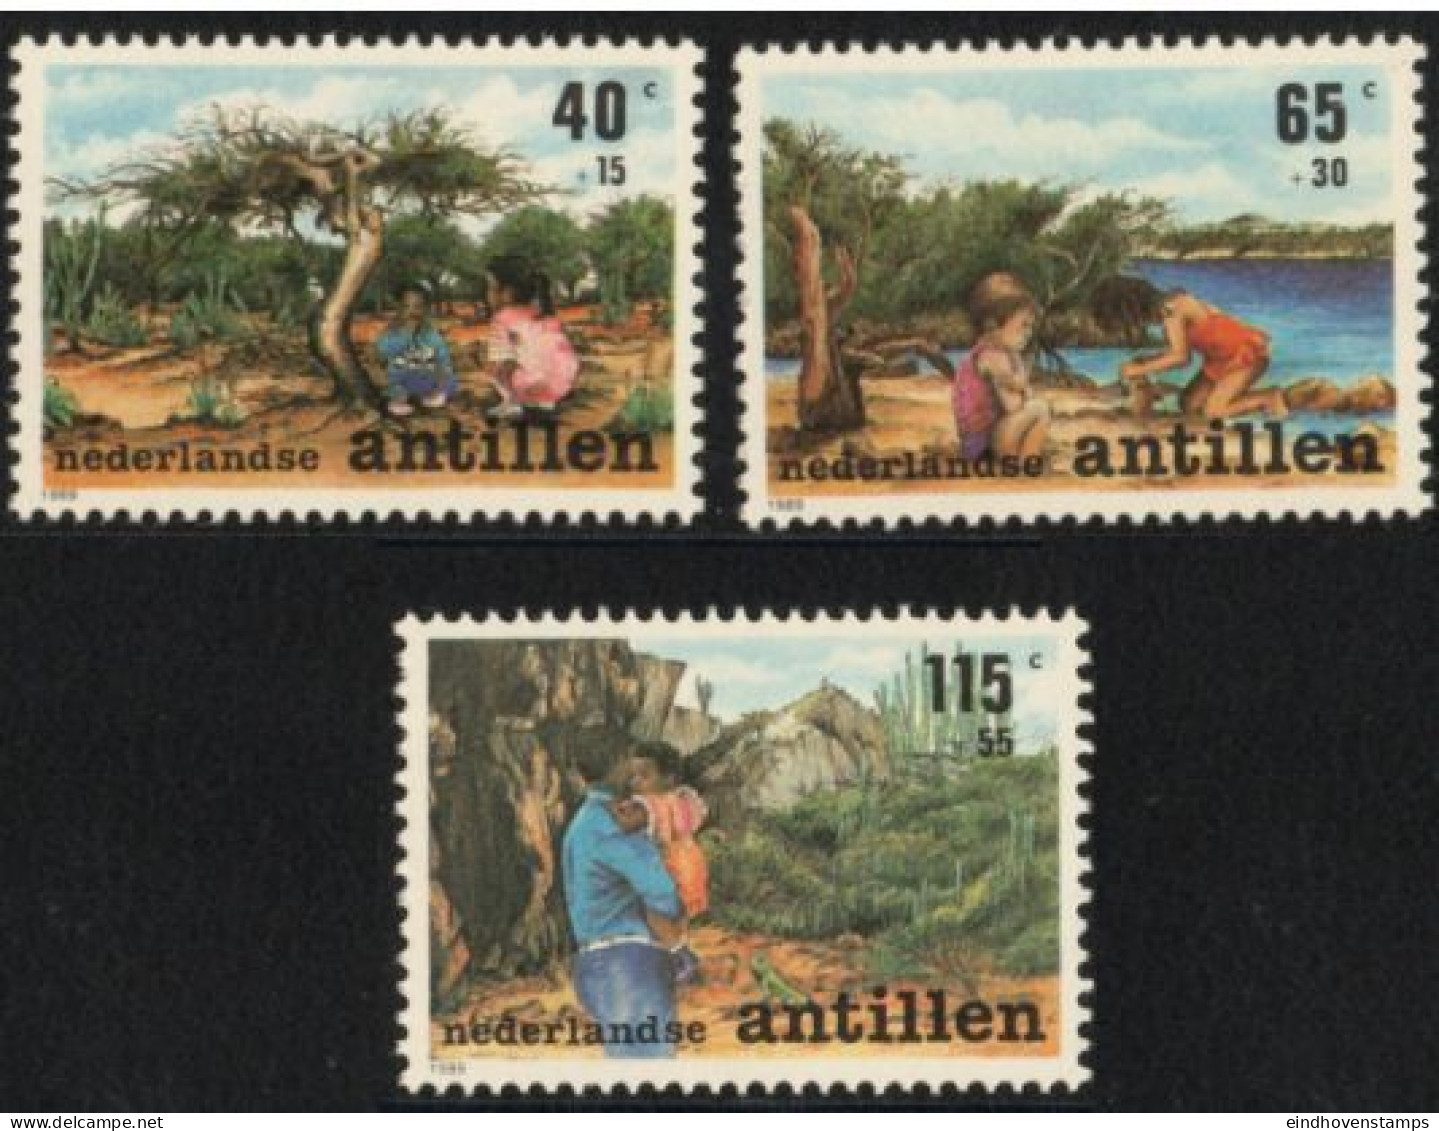 Dutch Antilles 1989 Child & Nature 3 Values MNH Nederlandse Antillen - Protección Del Medio Ambiente Y Del Clima